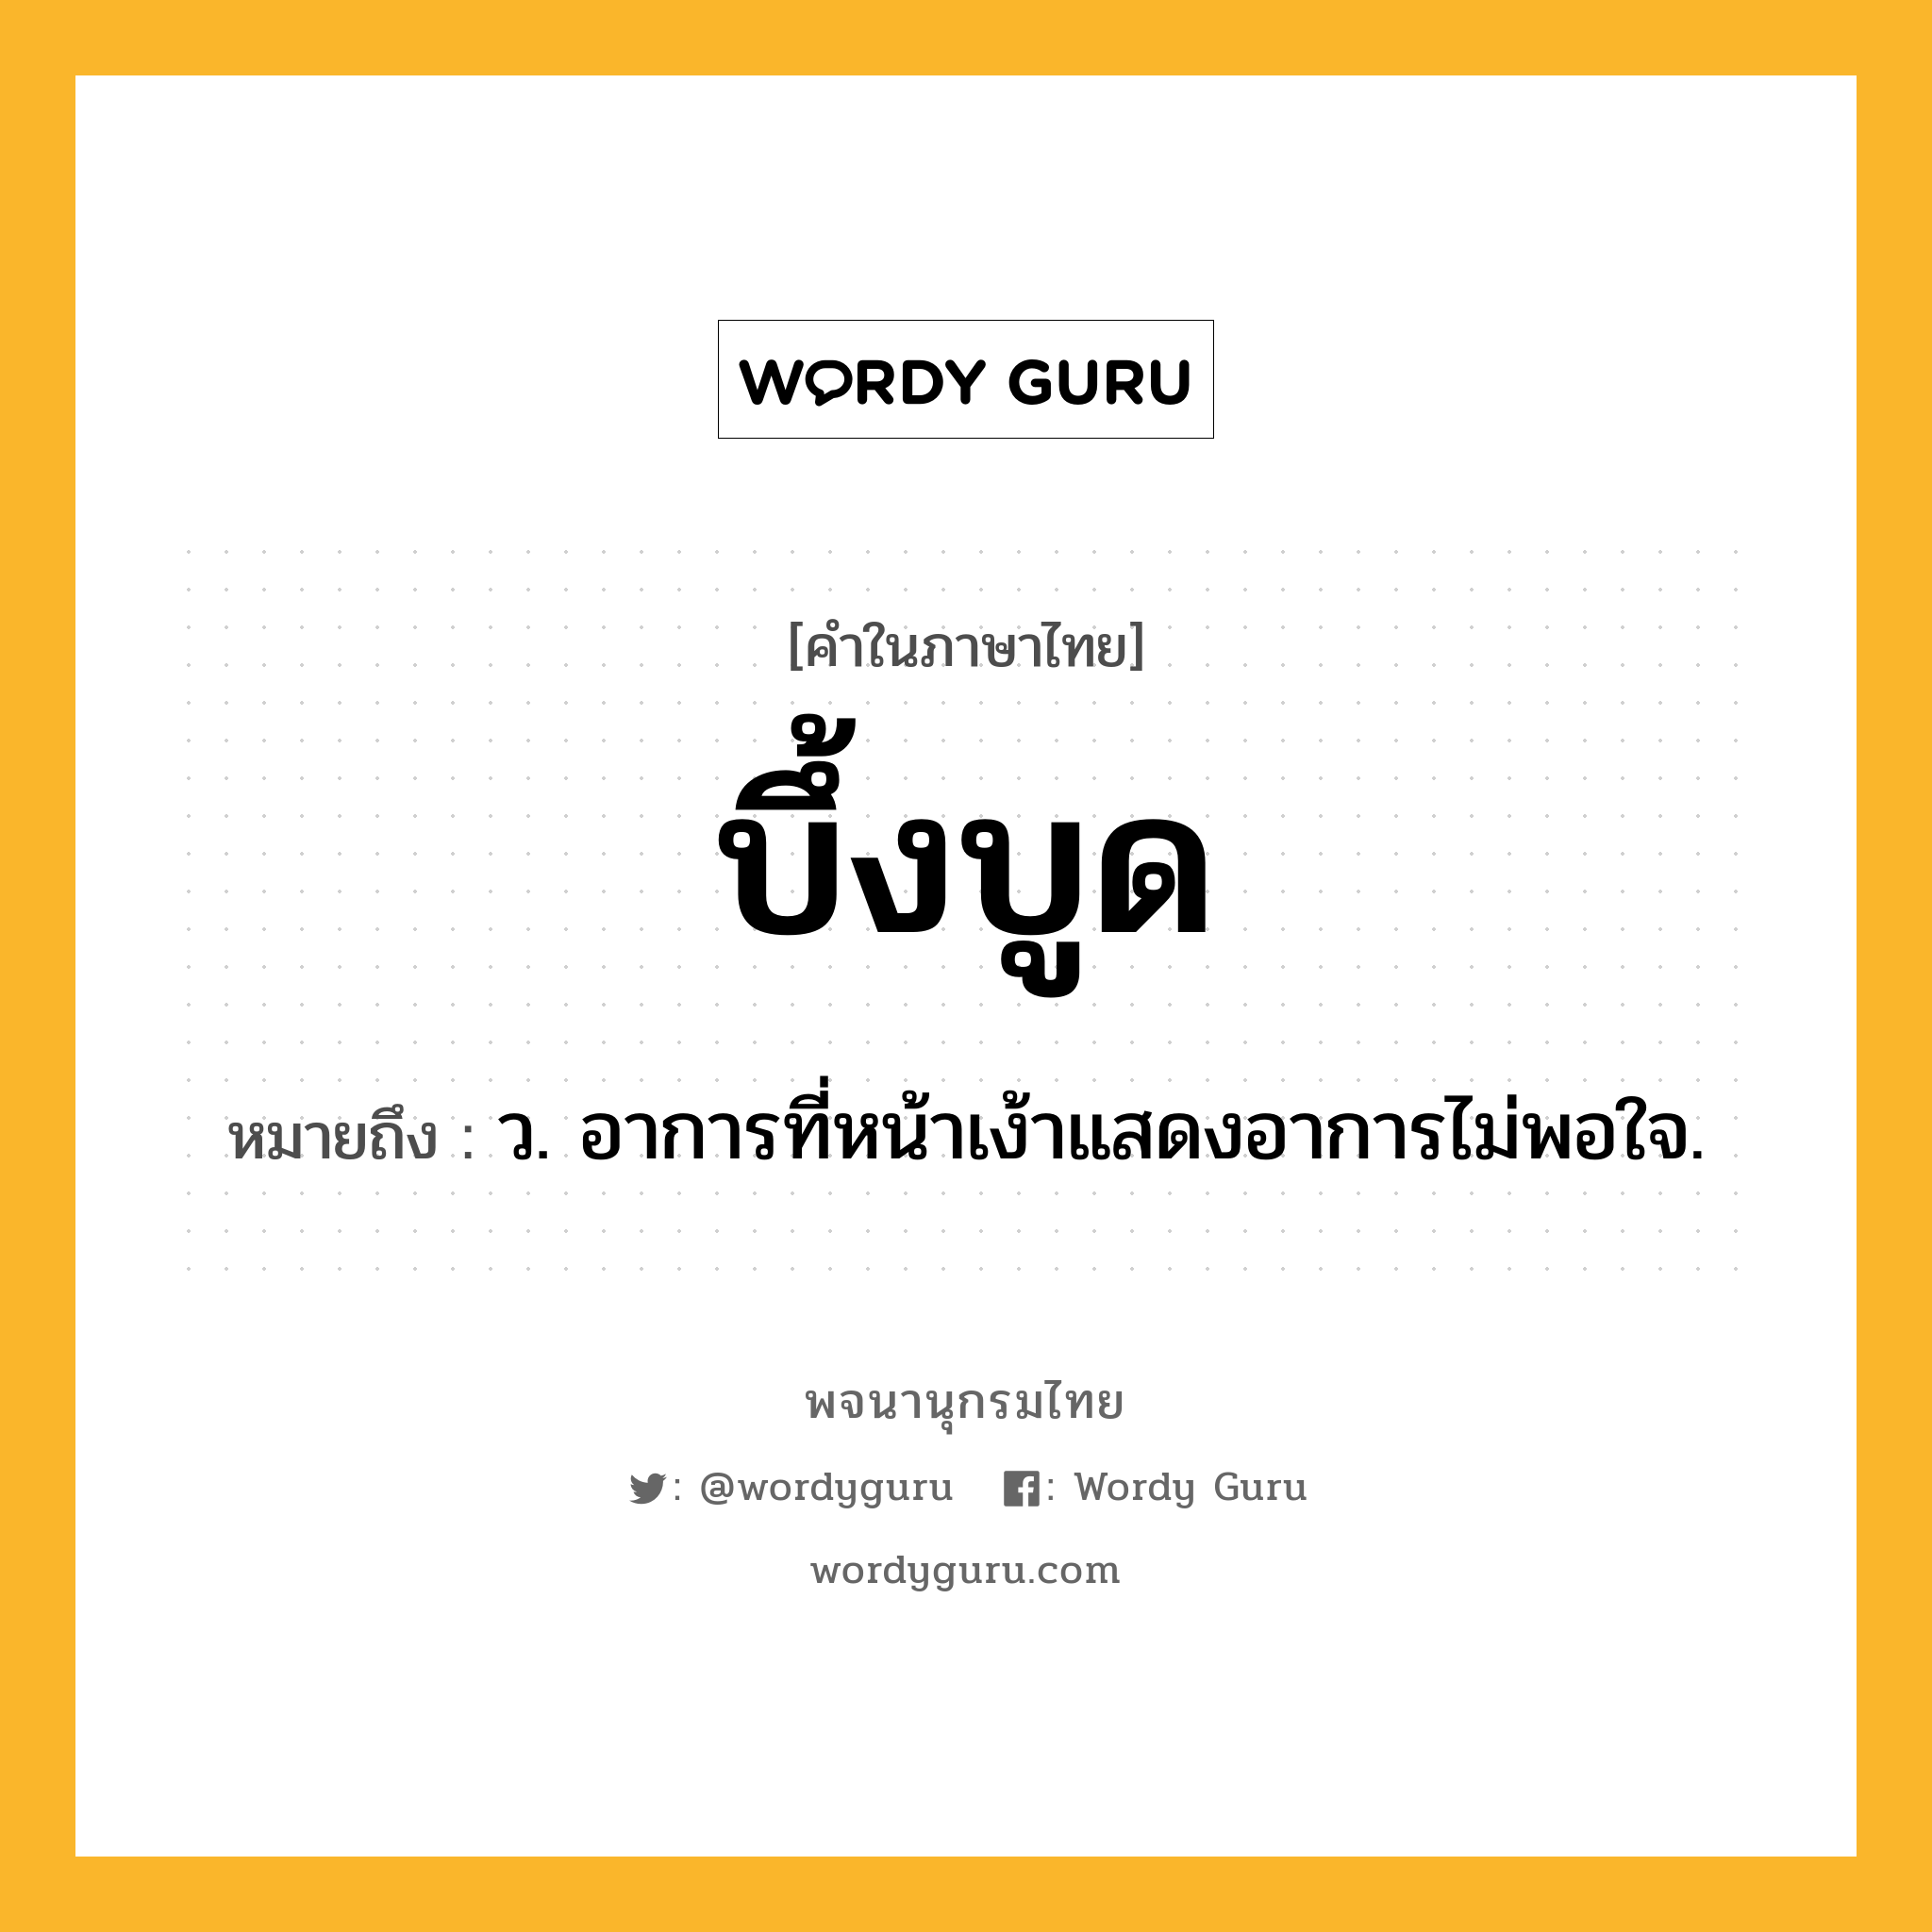 บึ้งบูด ความหมาย หมายถึงอะไร?, คำในภาษาไทย บึ้งบูด หมายถึง ว. อาการที่หน้าเง้าแสดงอาการไม่พอใจ.